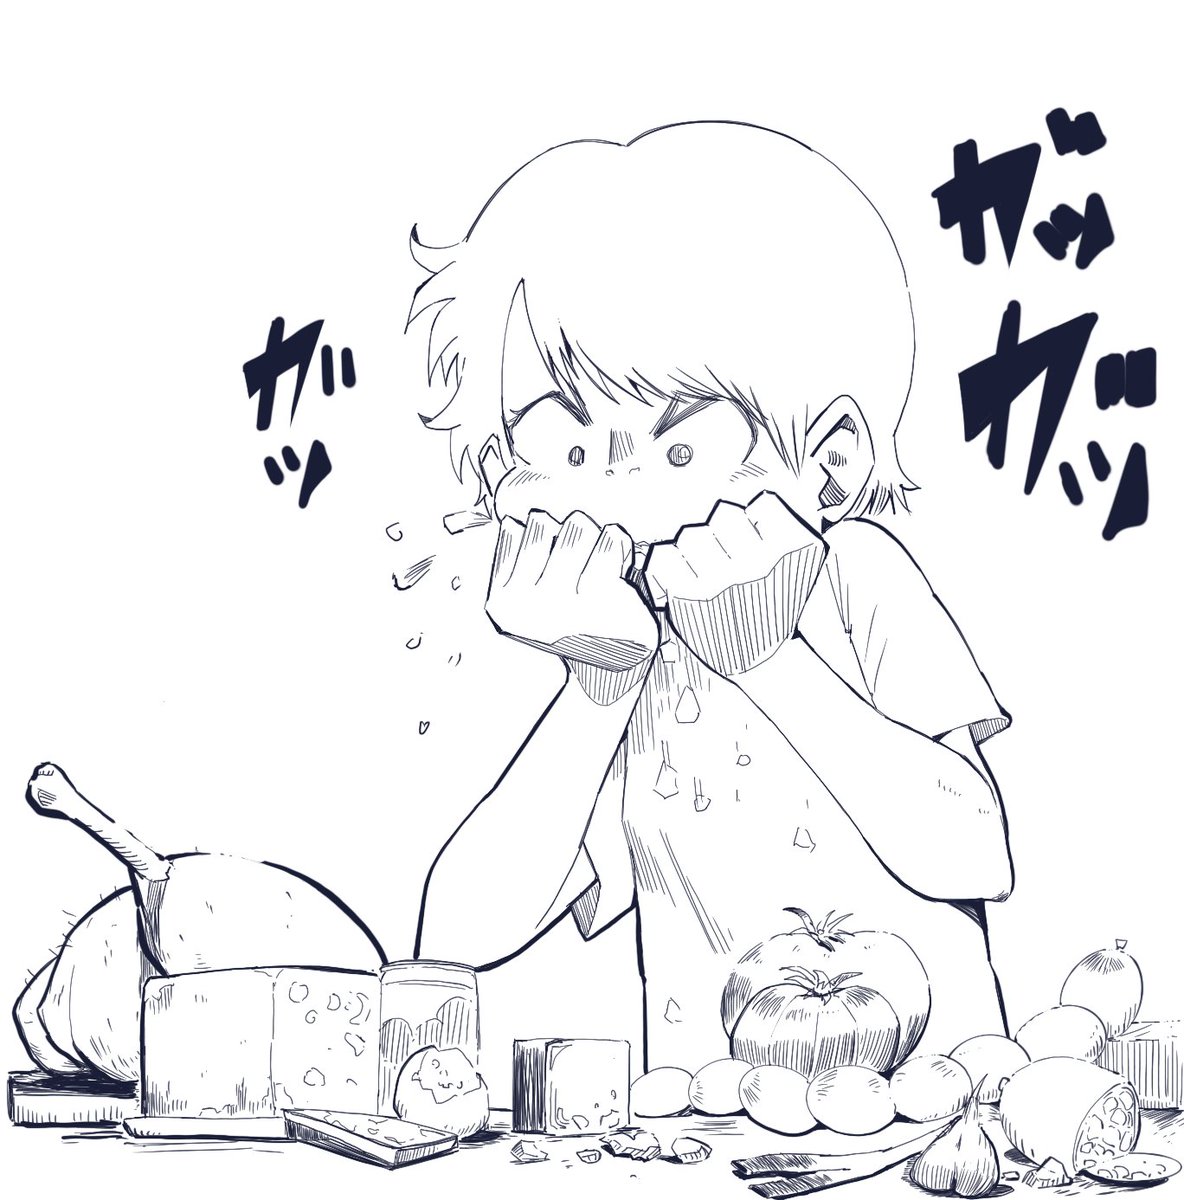 宮崎アニメで食べ物がっつくシーン好きです。 #絵描きさんと繋がりたい #カリオストロの城